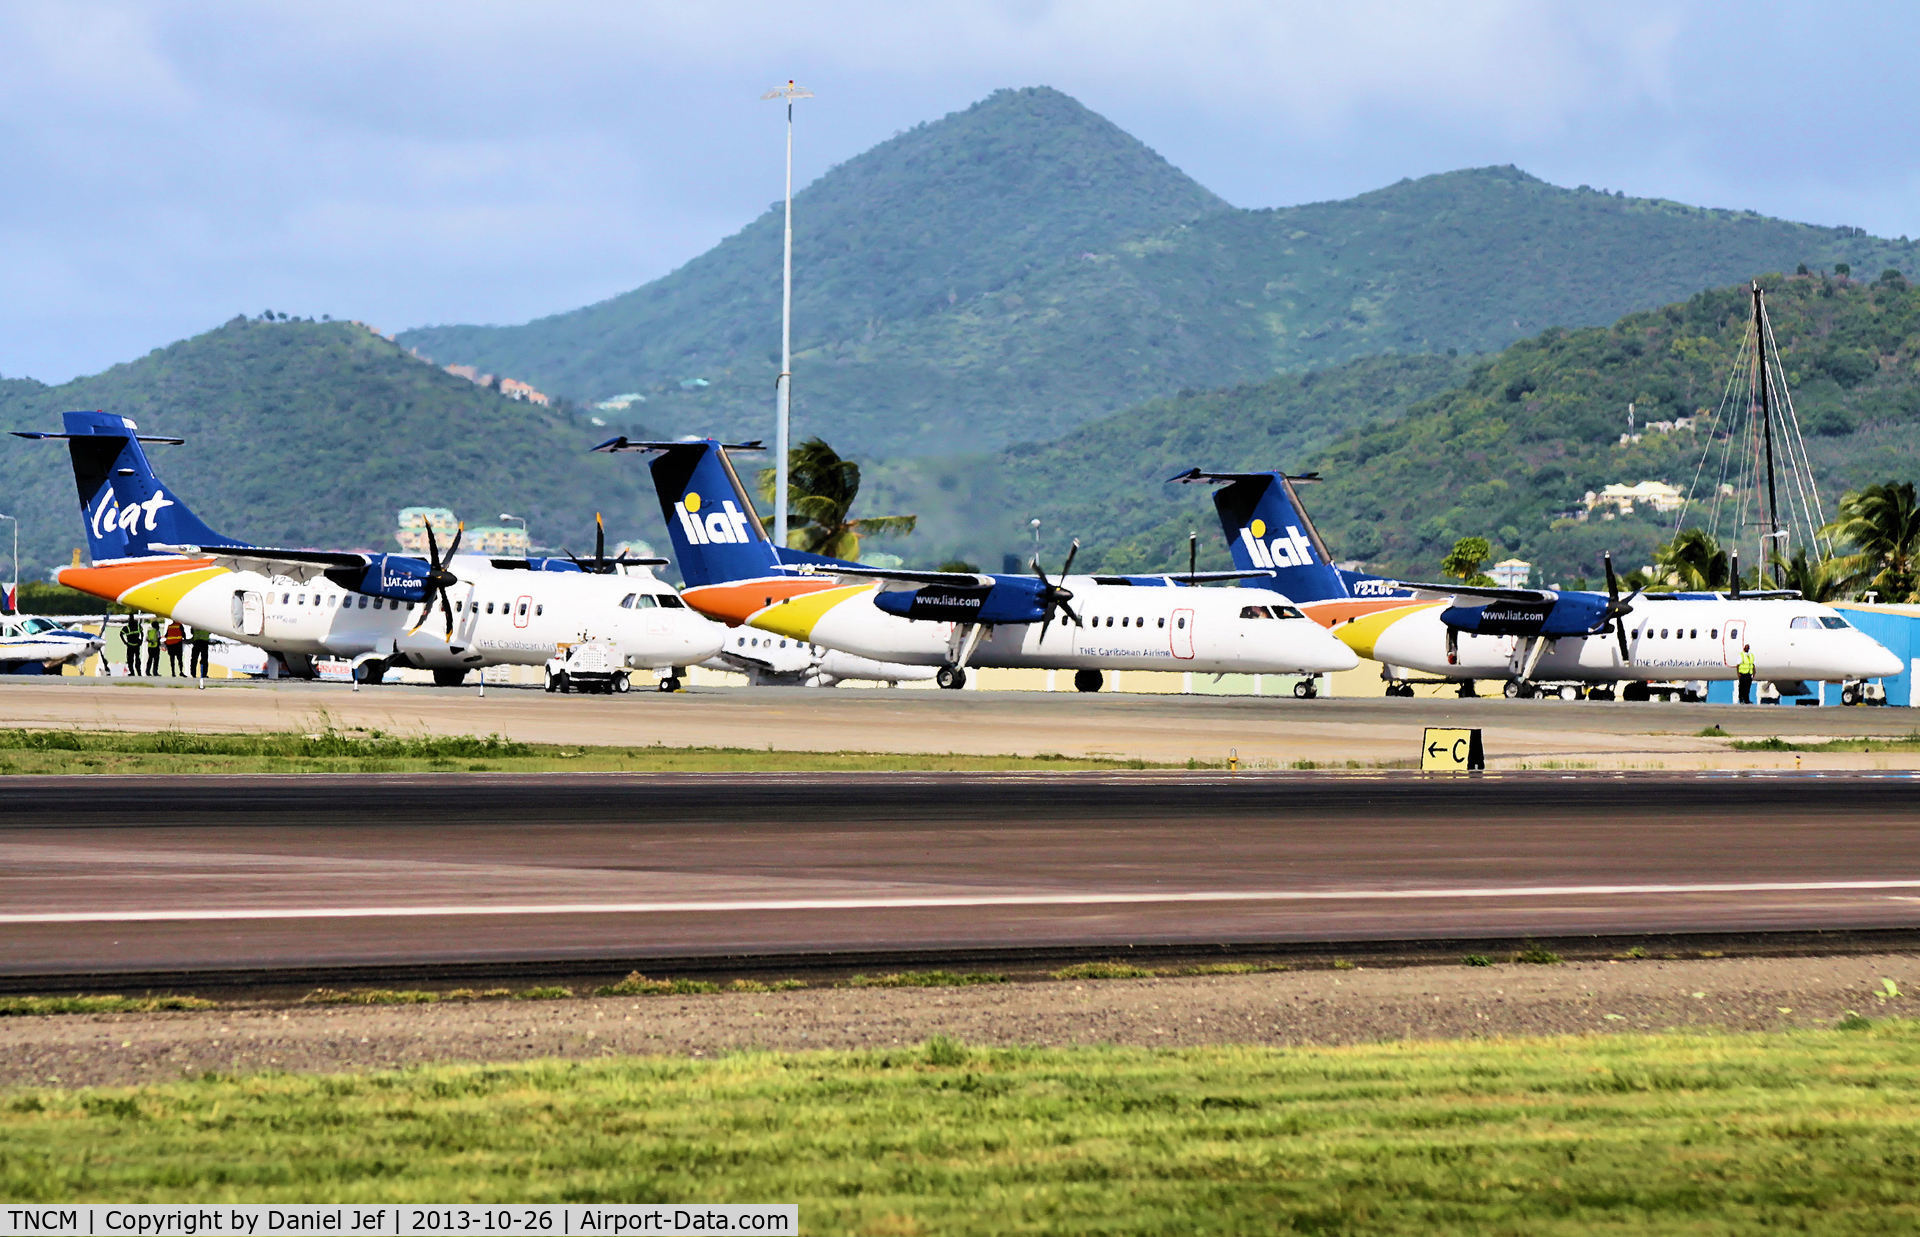 Princess Juliana International Airport, Philipsburg, Sint Maarten Netherlands Antilles (TNCM) - TNCM